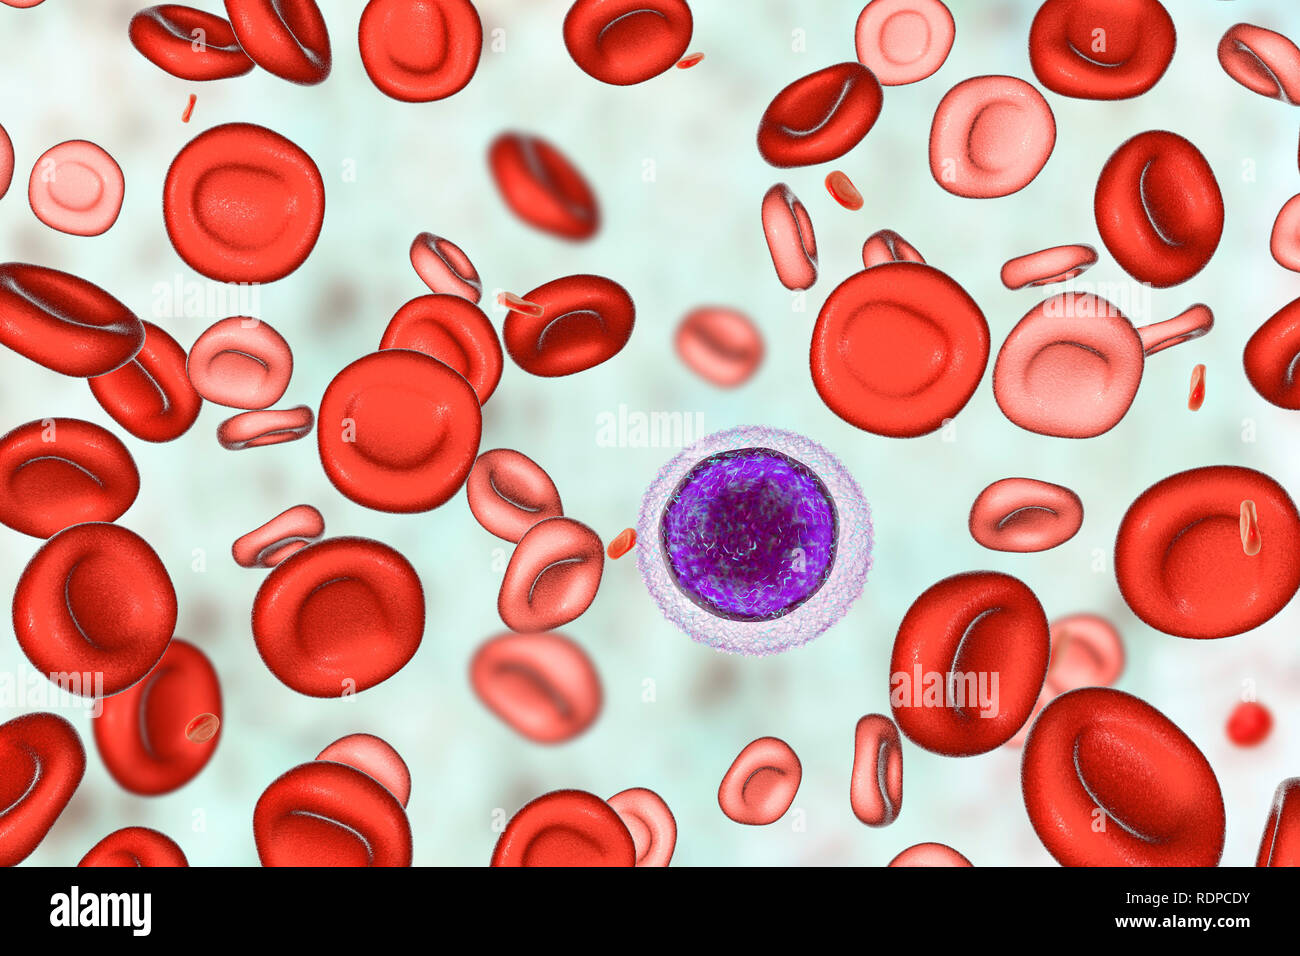 Anemia da deficienza di ferro. Computer illustrazione che mostra il sangue  di un paziente dopo hemotransfusion. Le normali cellule rosse del sangue  sono visti insieme con hypochromic (stain scarsamente) e microcytic  (piccole)